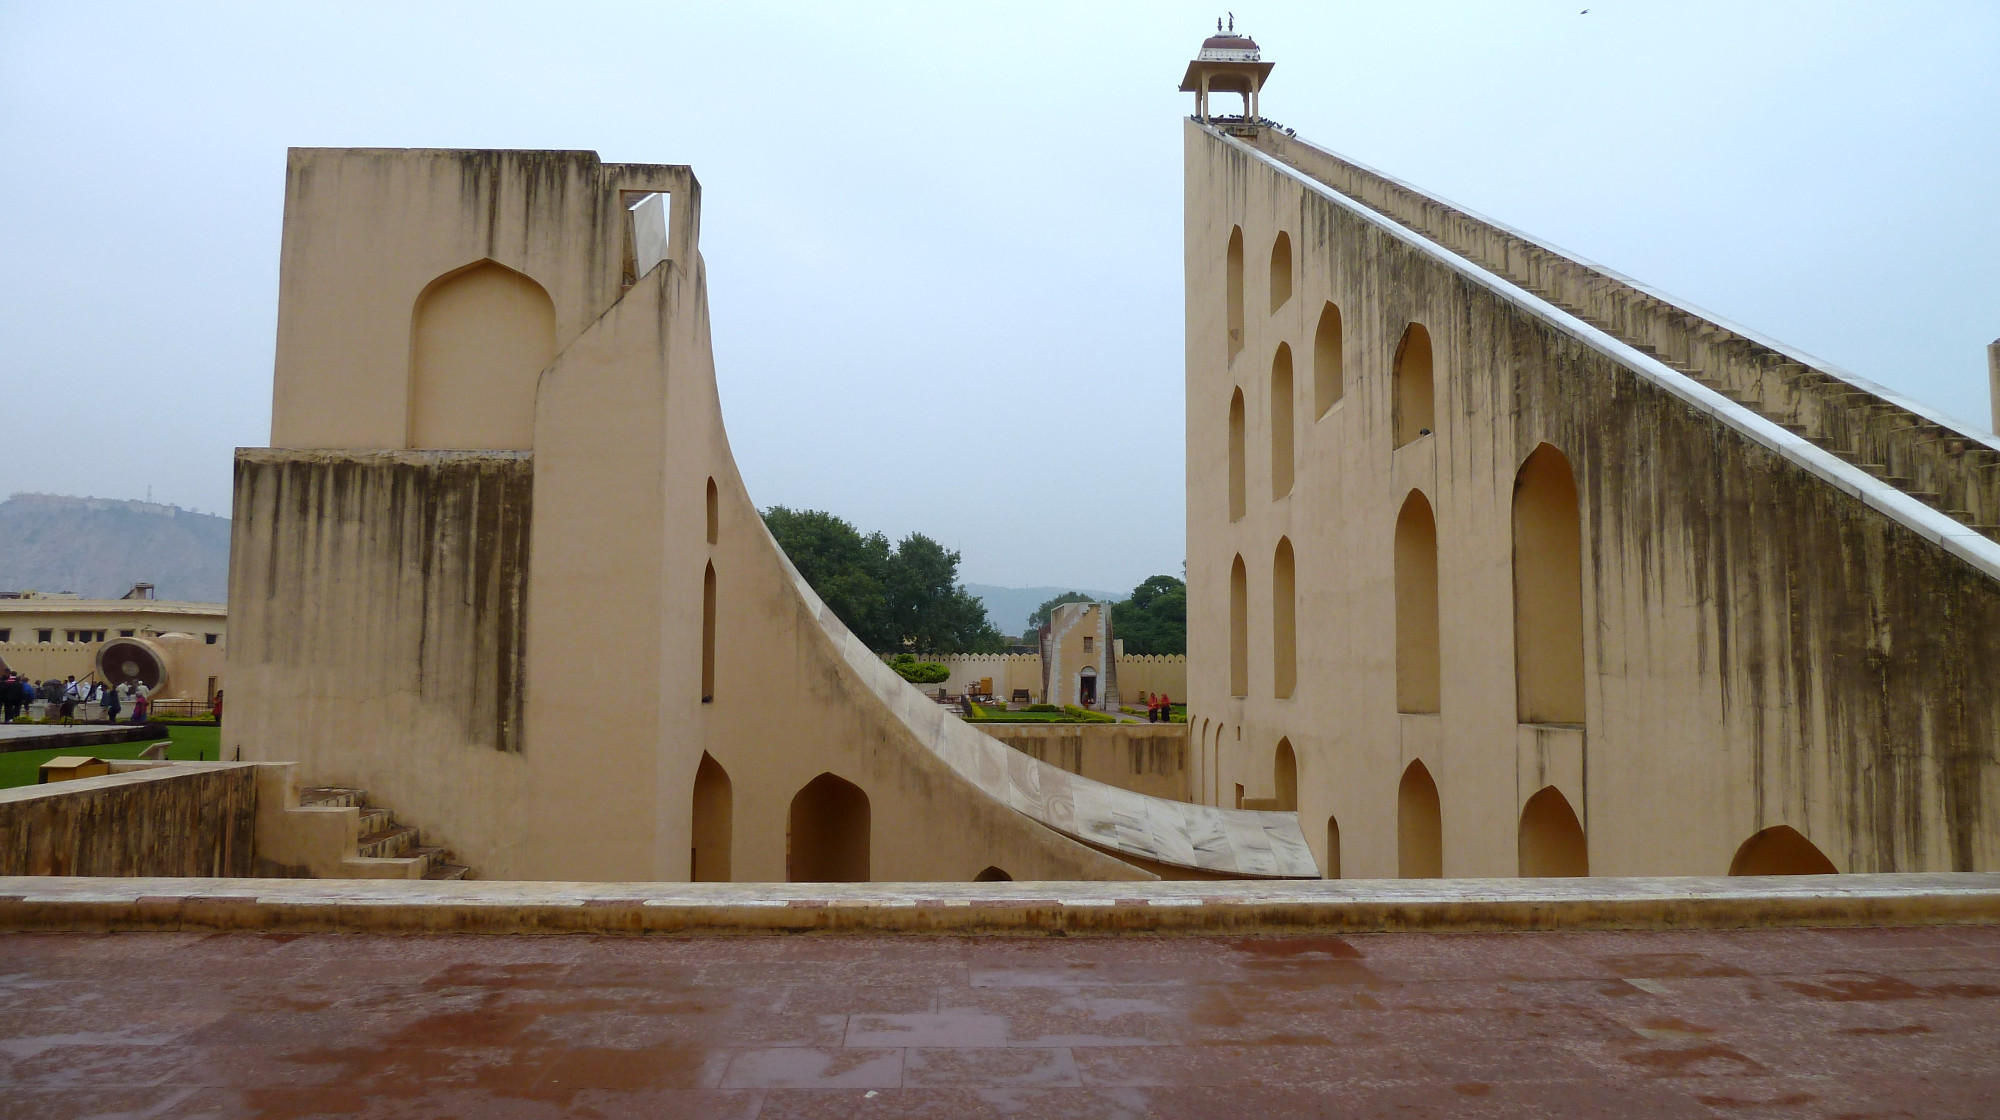 Jantar Mantar, India